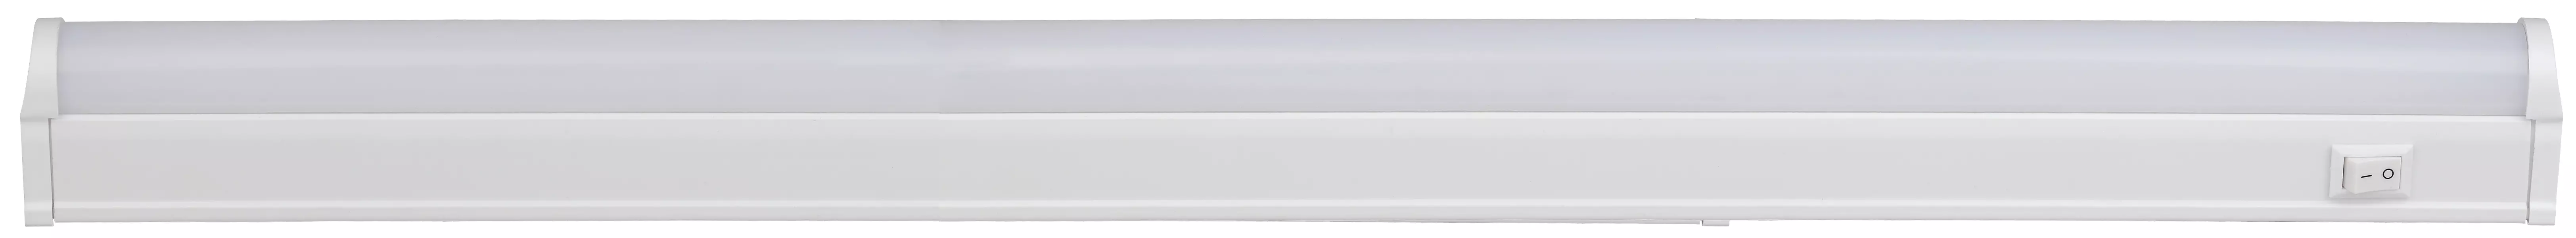 Светодиодный светильник ЭРА LLED-01-4000-W 8Вт